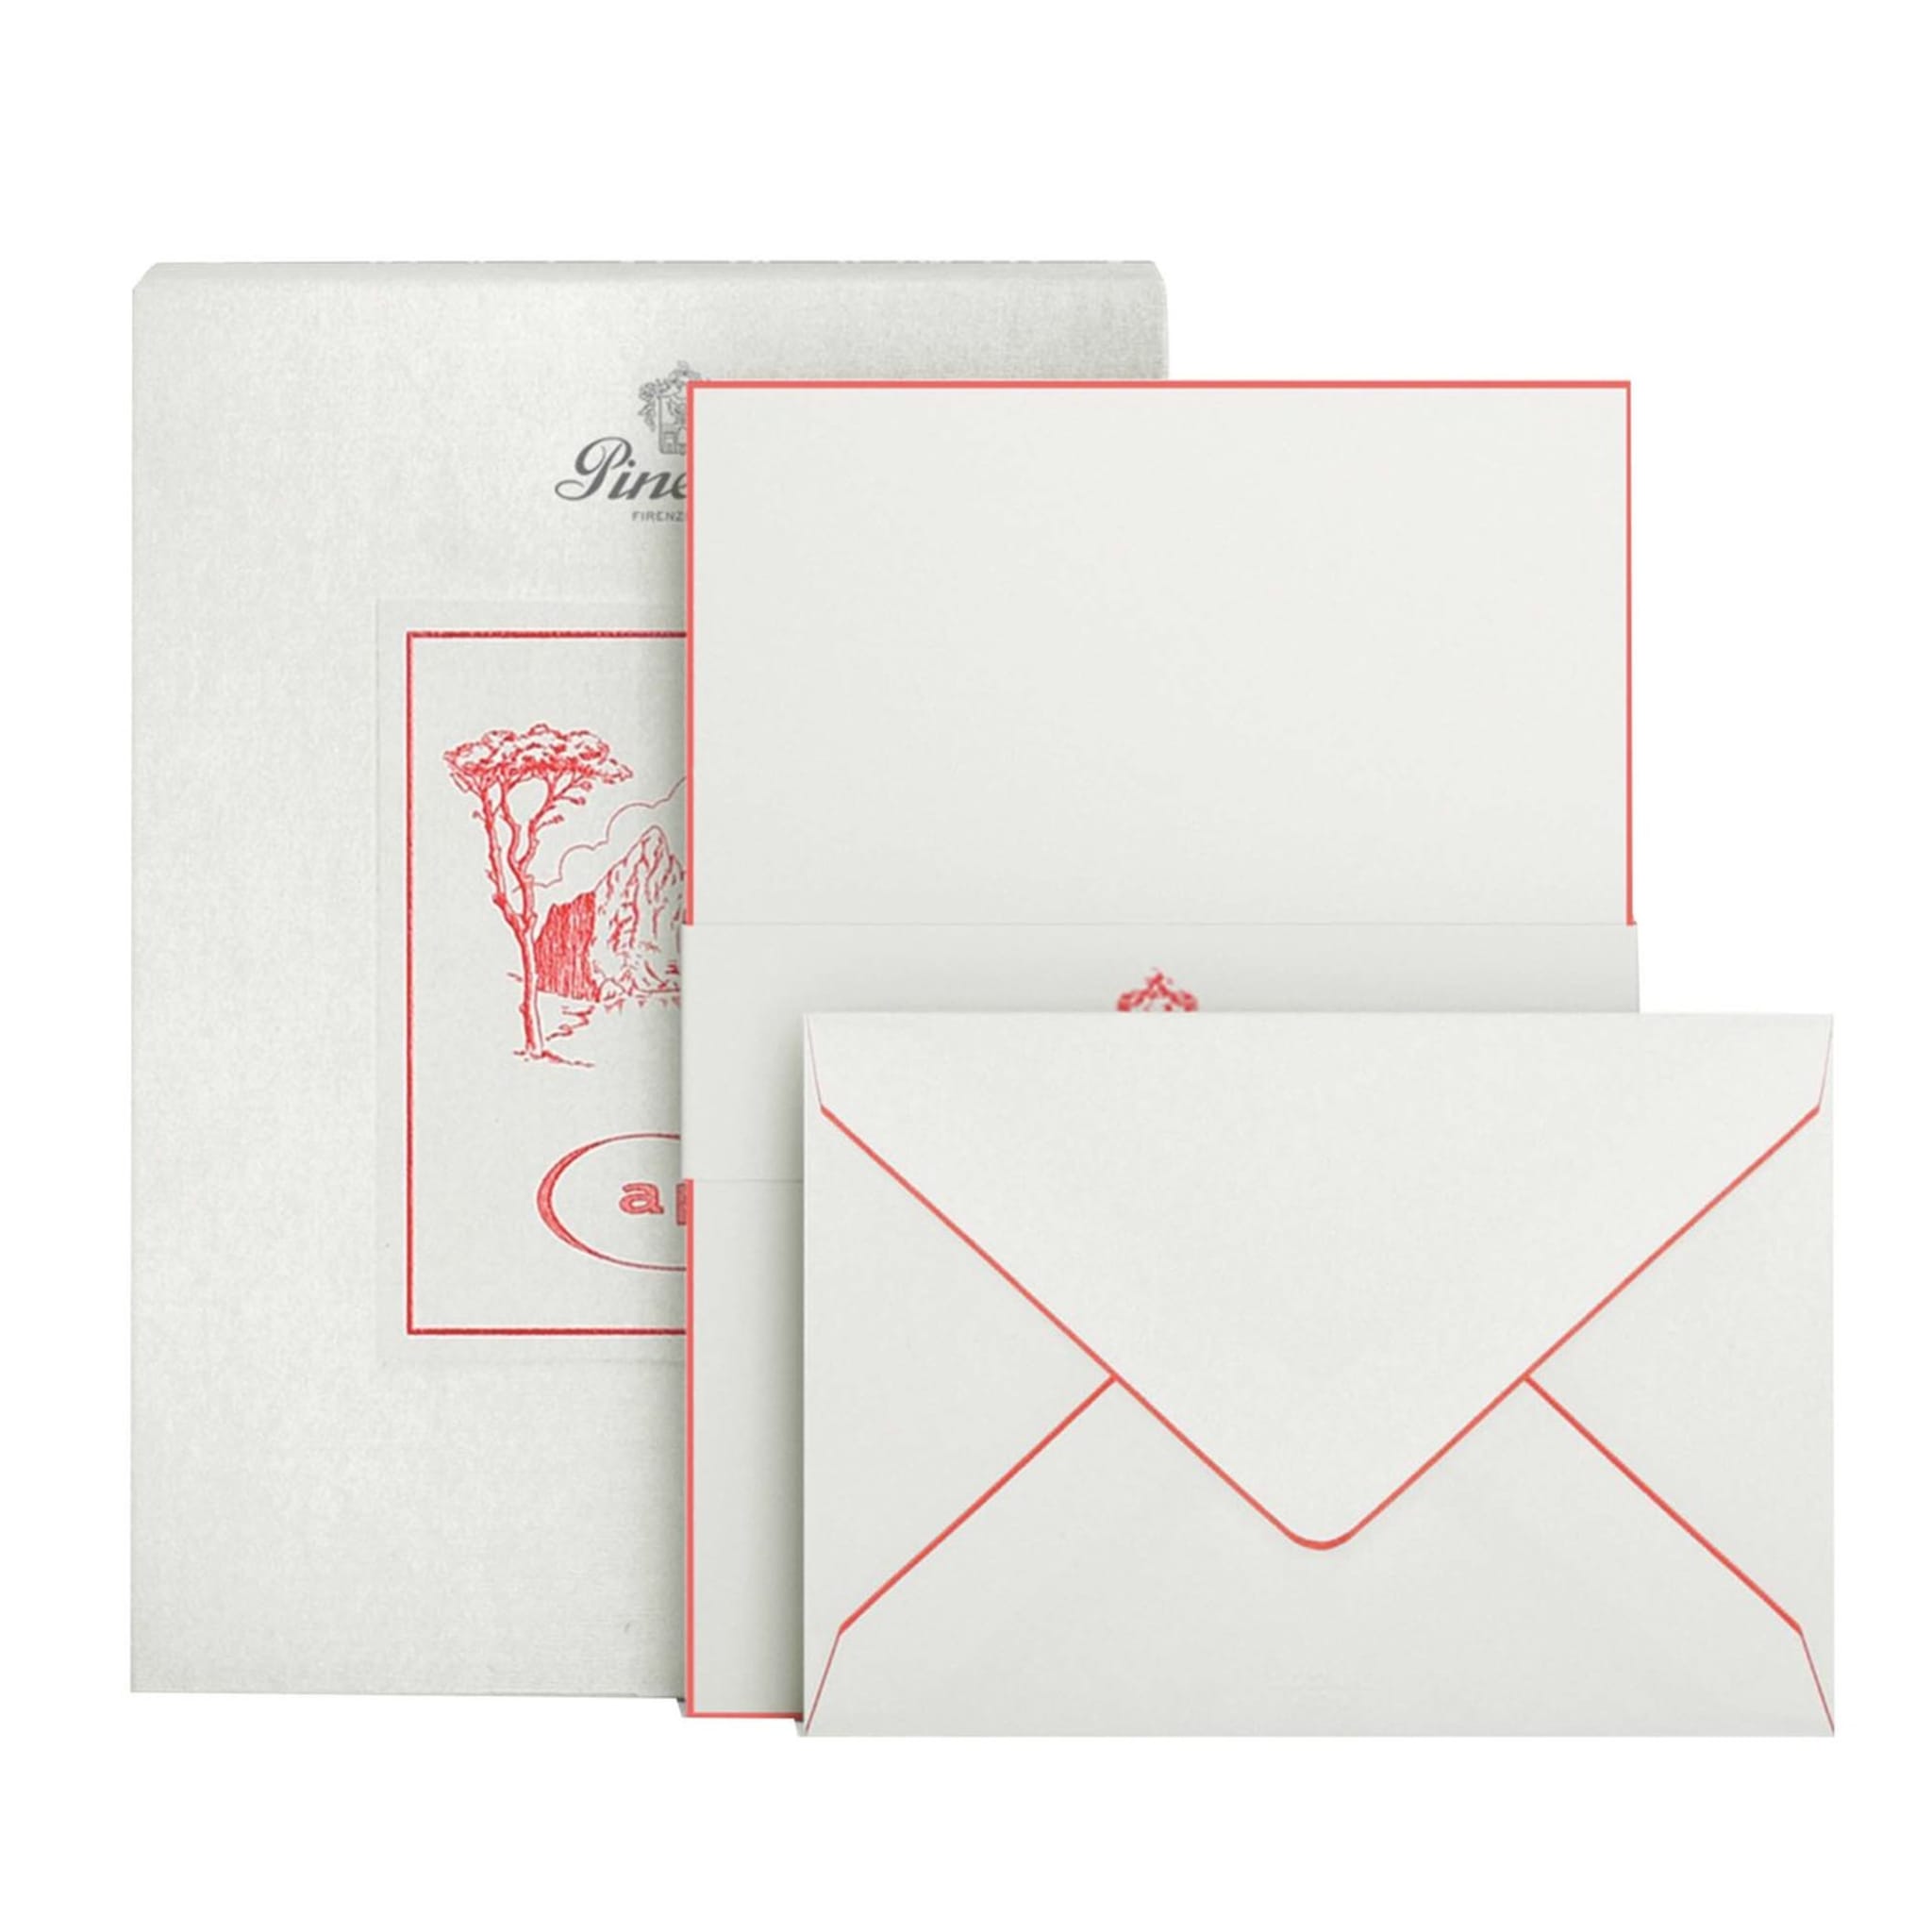 Capri Set of Sheets and Envelopes 210 x 148 mm - Main view